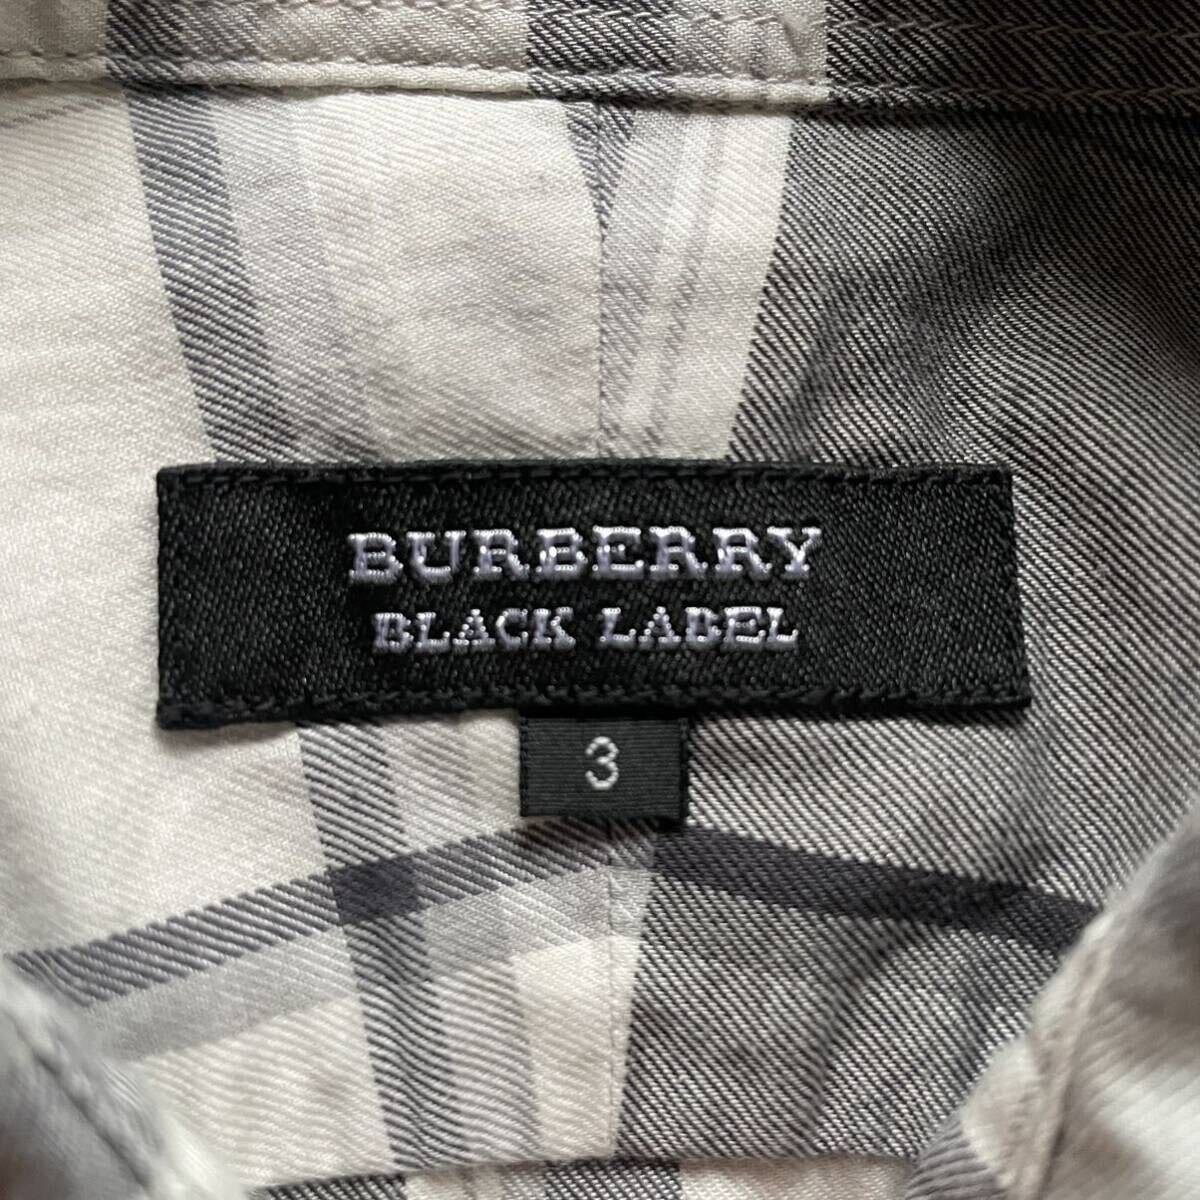 1 иен [ прекрасный товар ]BURBERRY BLACK LABEL Burberry Black Label noba проверка 7 минут рукав рубашка 3 L большой размер черный проверка чёрный Logo 